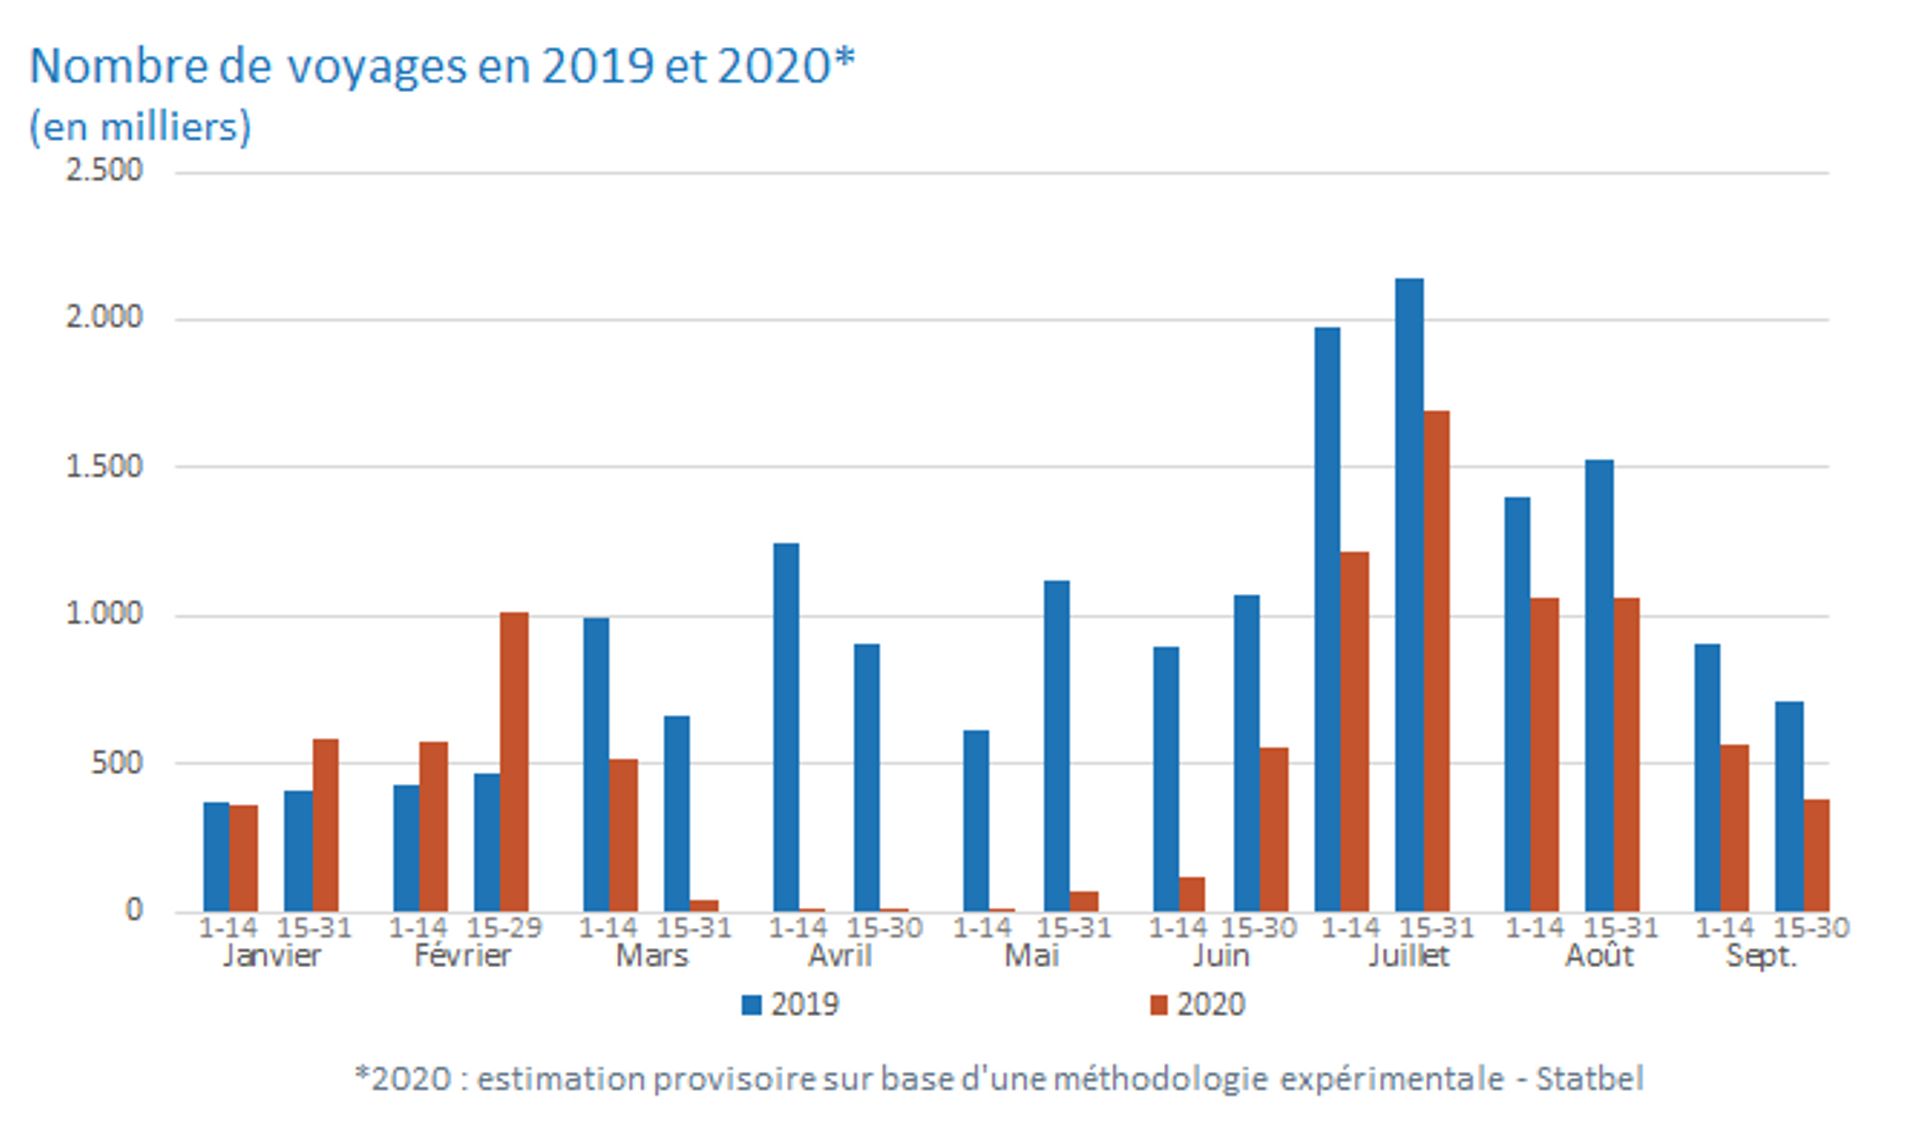 Voyages à l’étranger : comment les habitudes des Belges ont-elles changé entre 2019 et 2020 ?